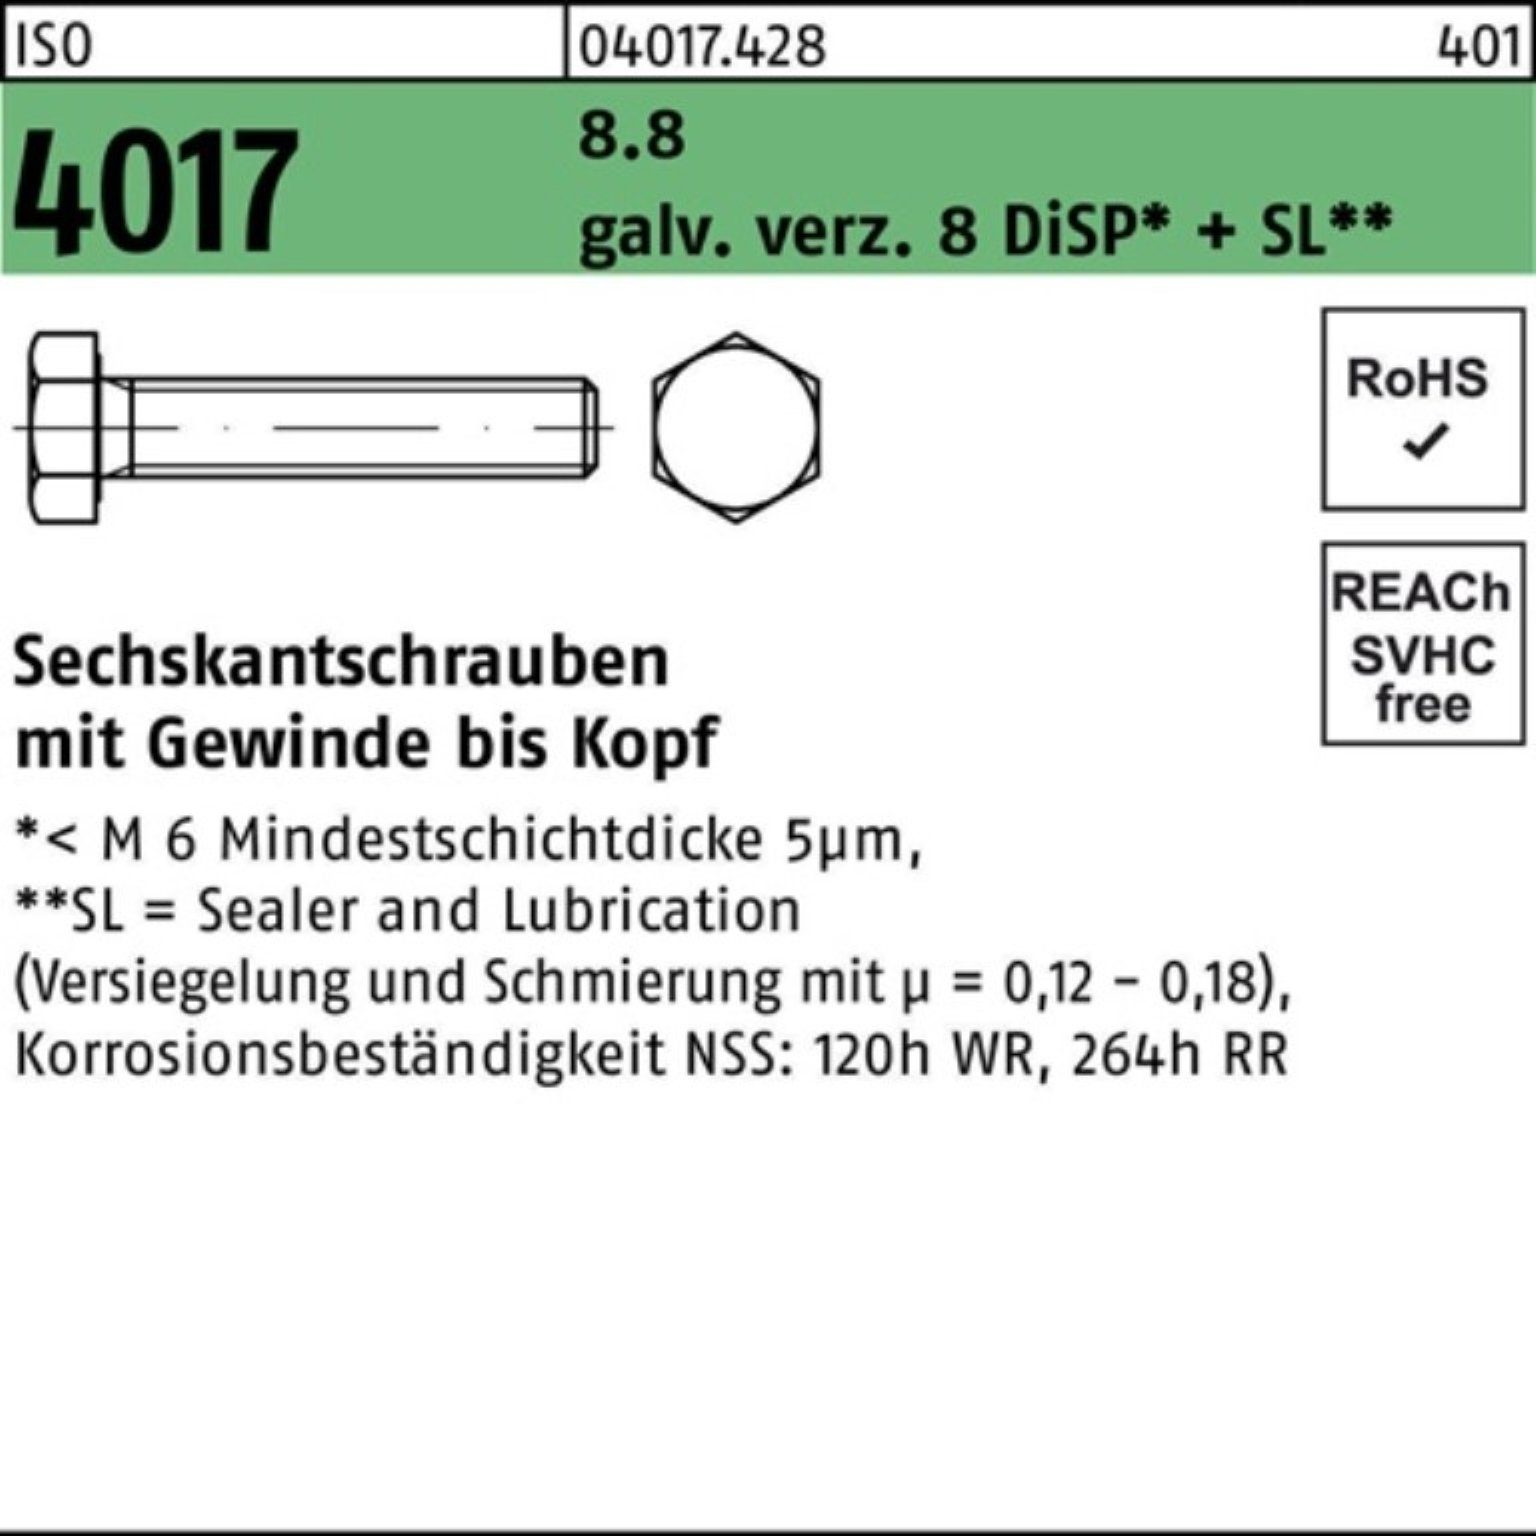 Pack 4017 galv.verz. M4x ISO Sechskantschraube VG Bufab 30 Sechskantschraube DiSP+ 500er 8.8 8